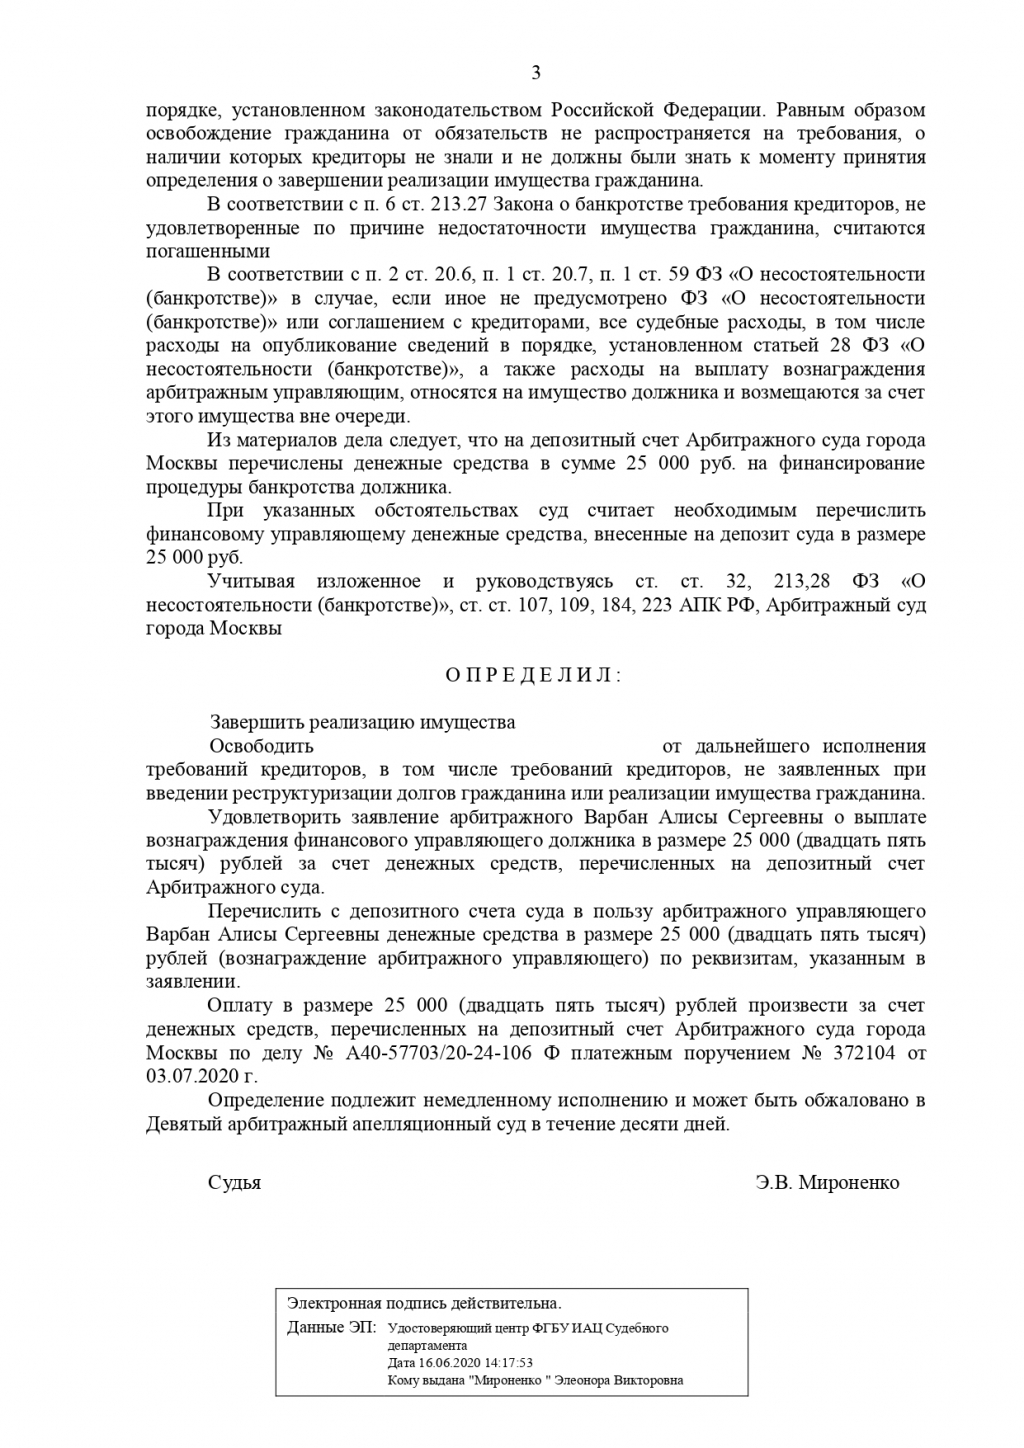 2ЛЕКС Банкротство физических лиц, списание долгов - дело № А40-57703/20